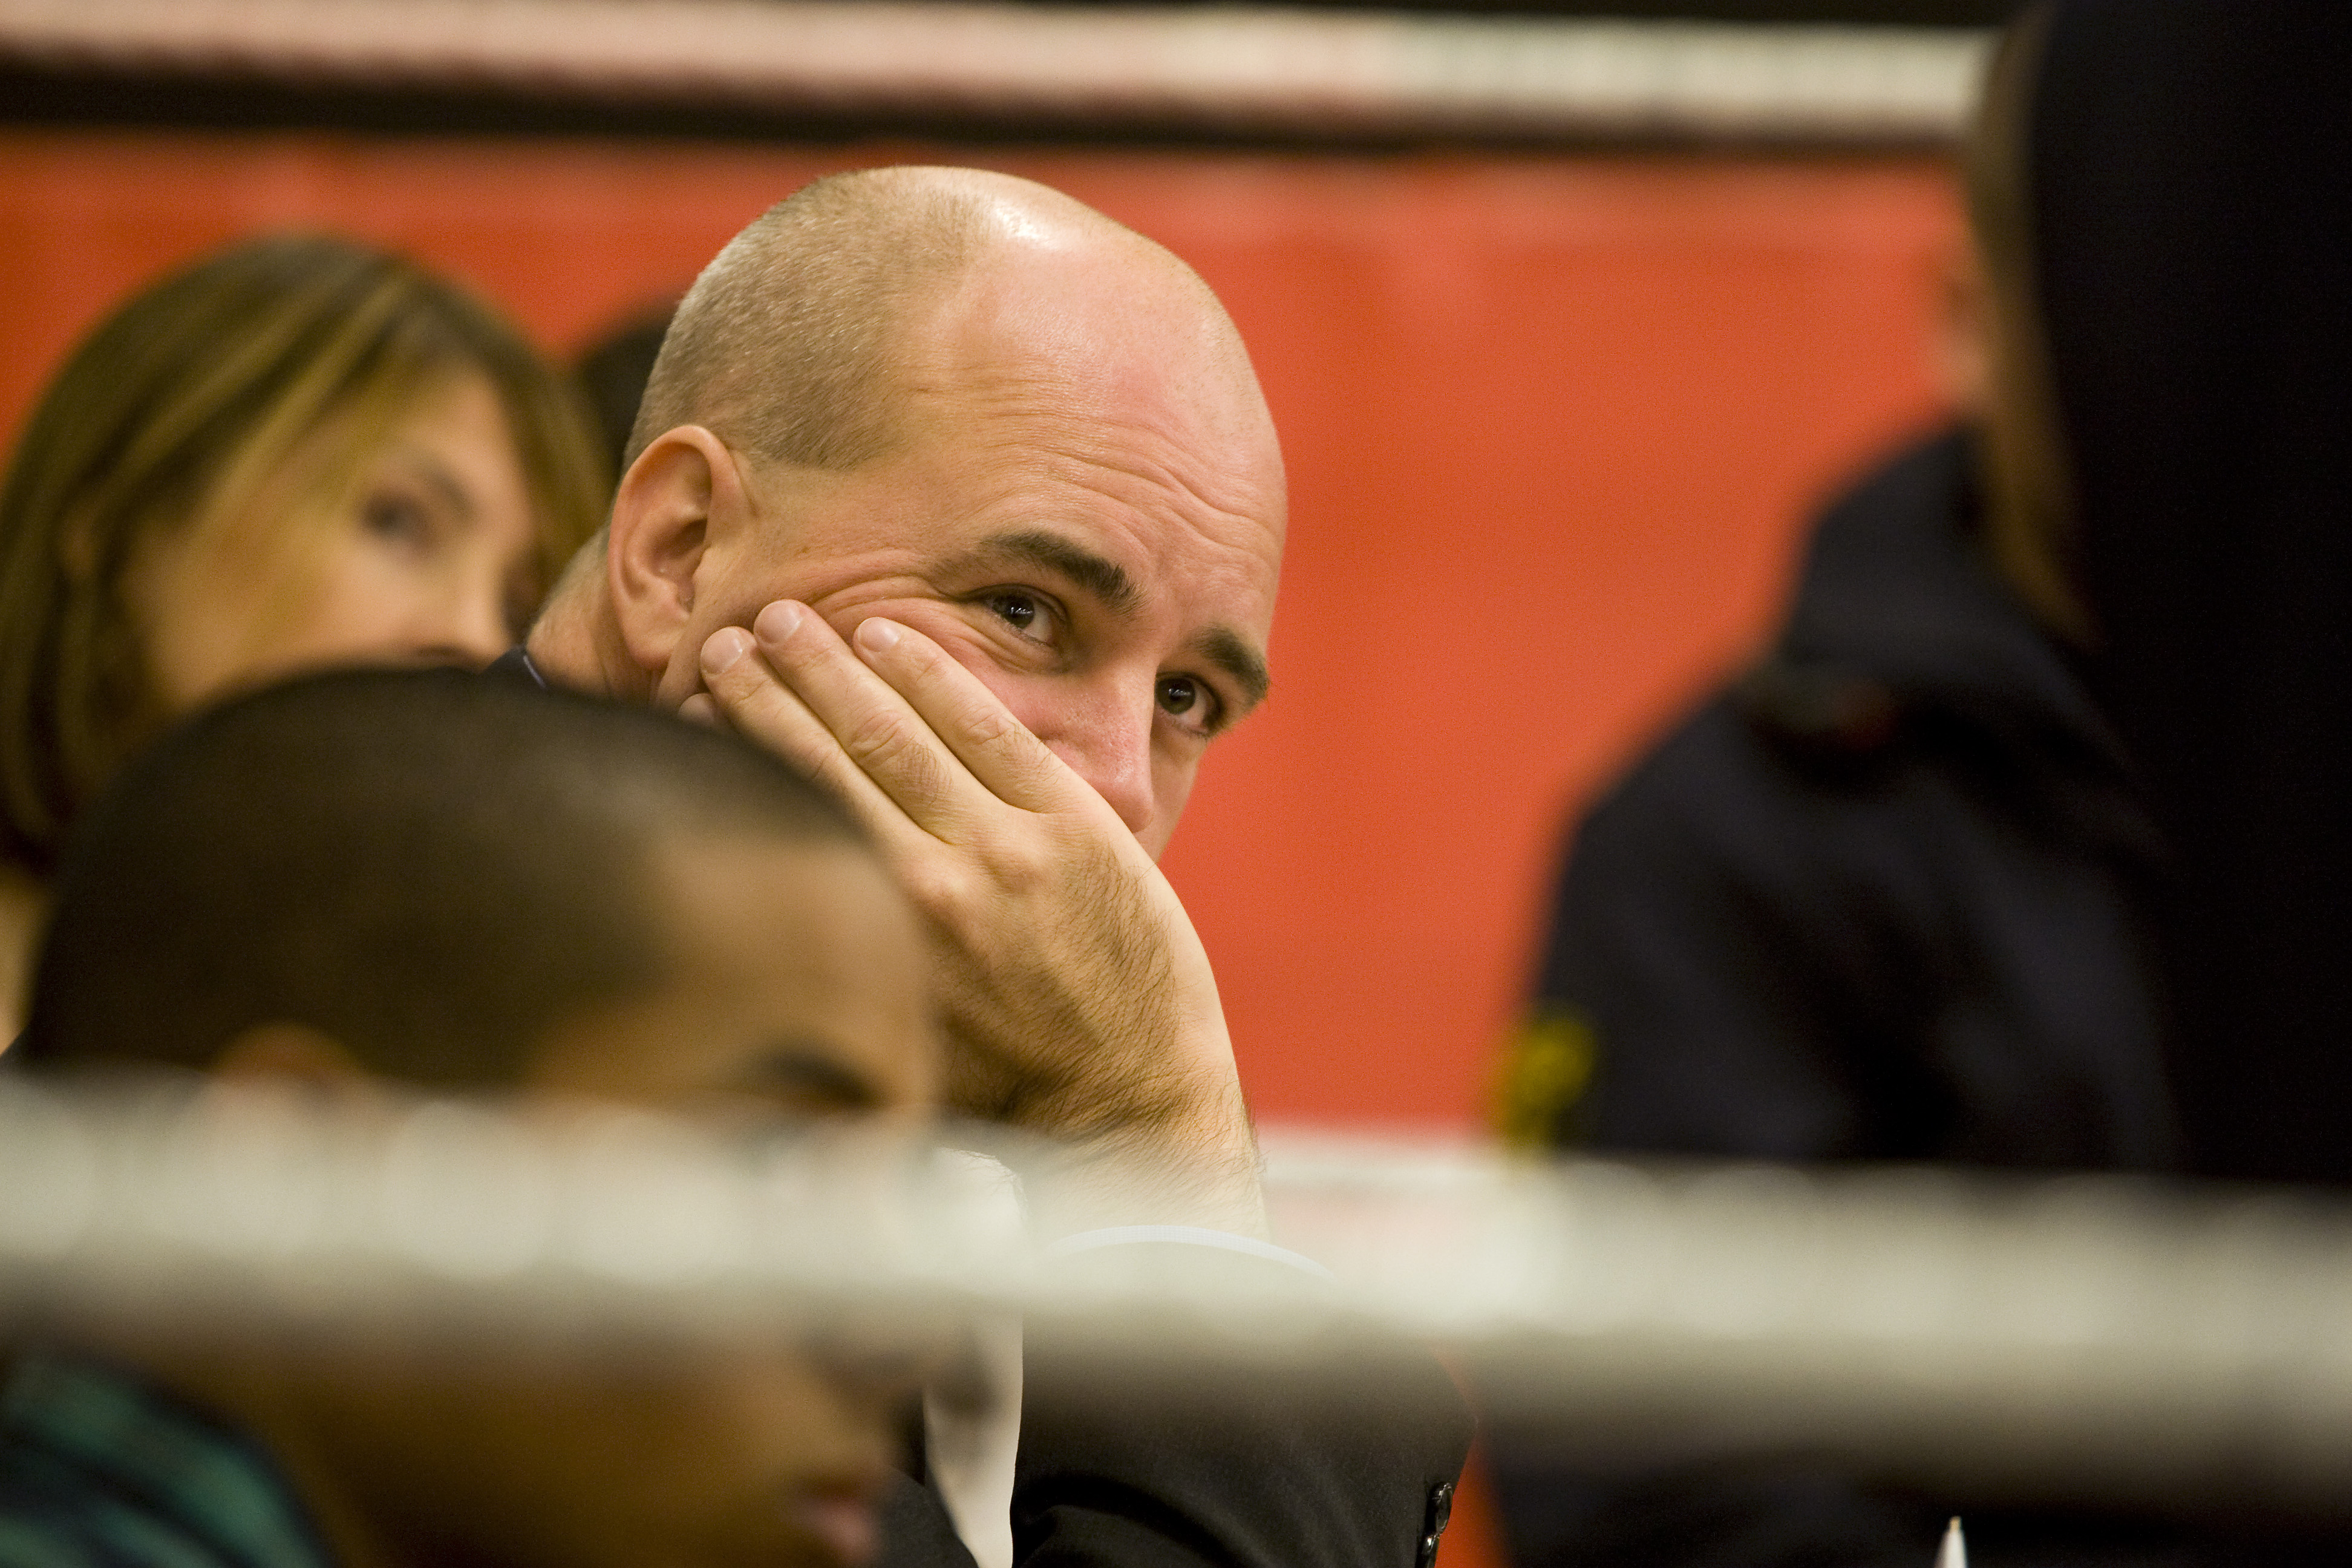 Riksdagsvalet 2010, Jobb, Ungdomsarbetslöshet, SSU, Fredrik Reinfeldt